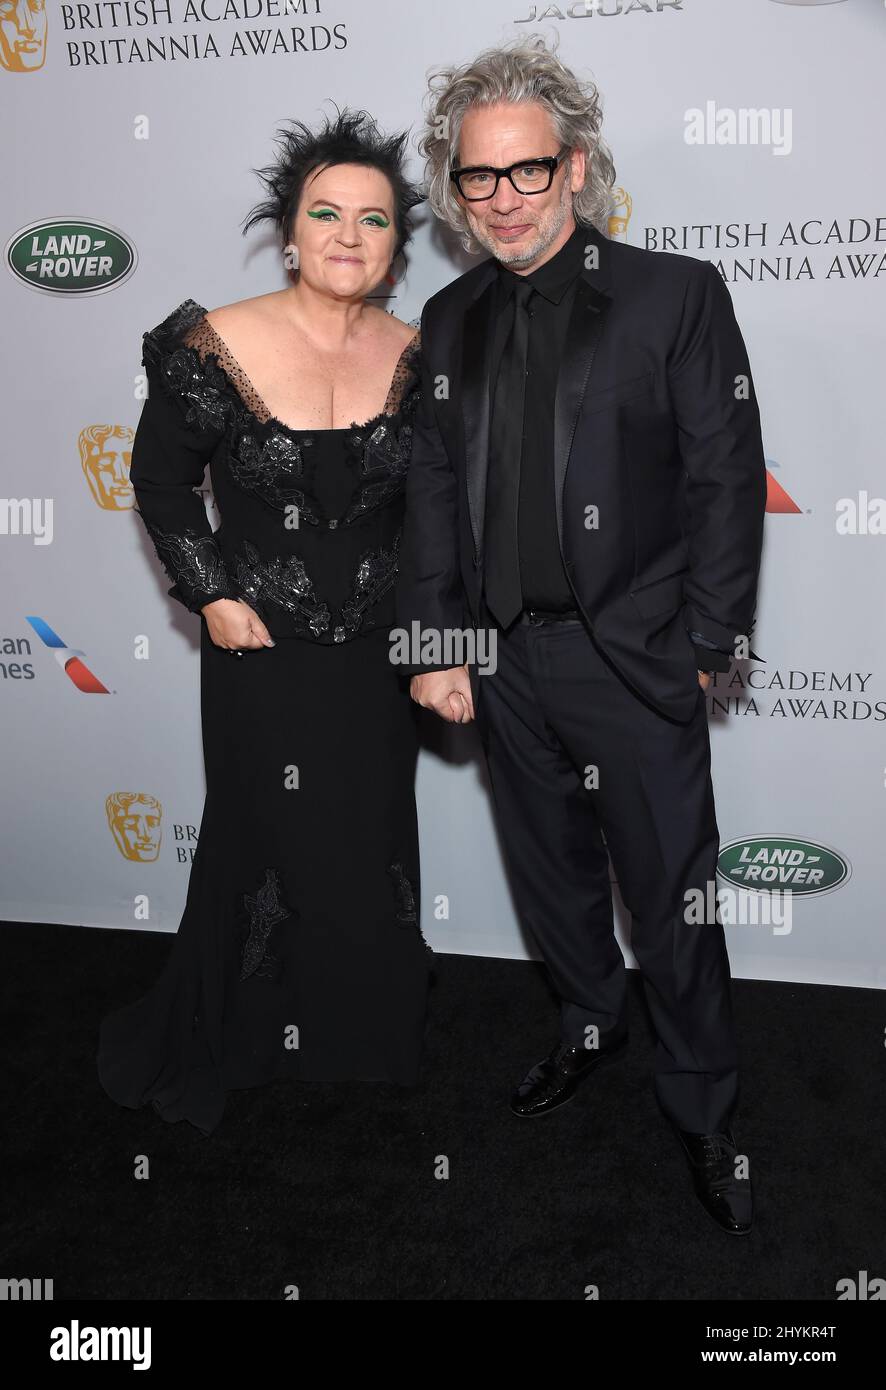 Dalia Ibelhauptaite et Dexter Fletcher arrivent au British Academy Britannia Awards 2019 qui s'est tenu à l'hôtel Beverly Hilton de Beverly Hills Banque D'Images